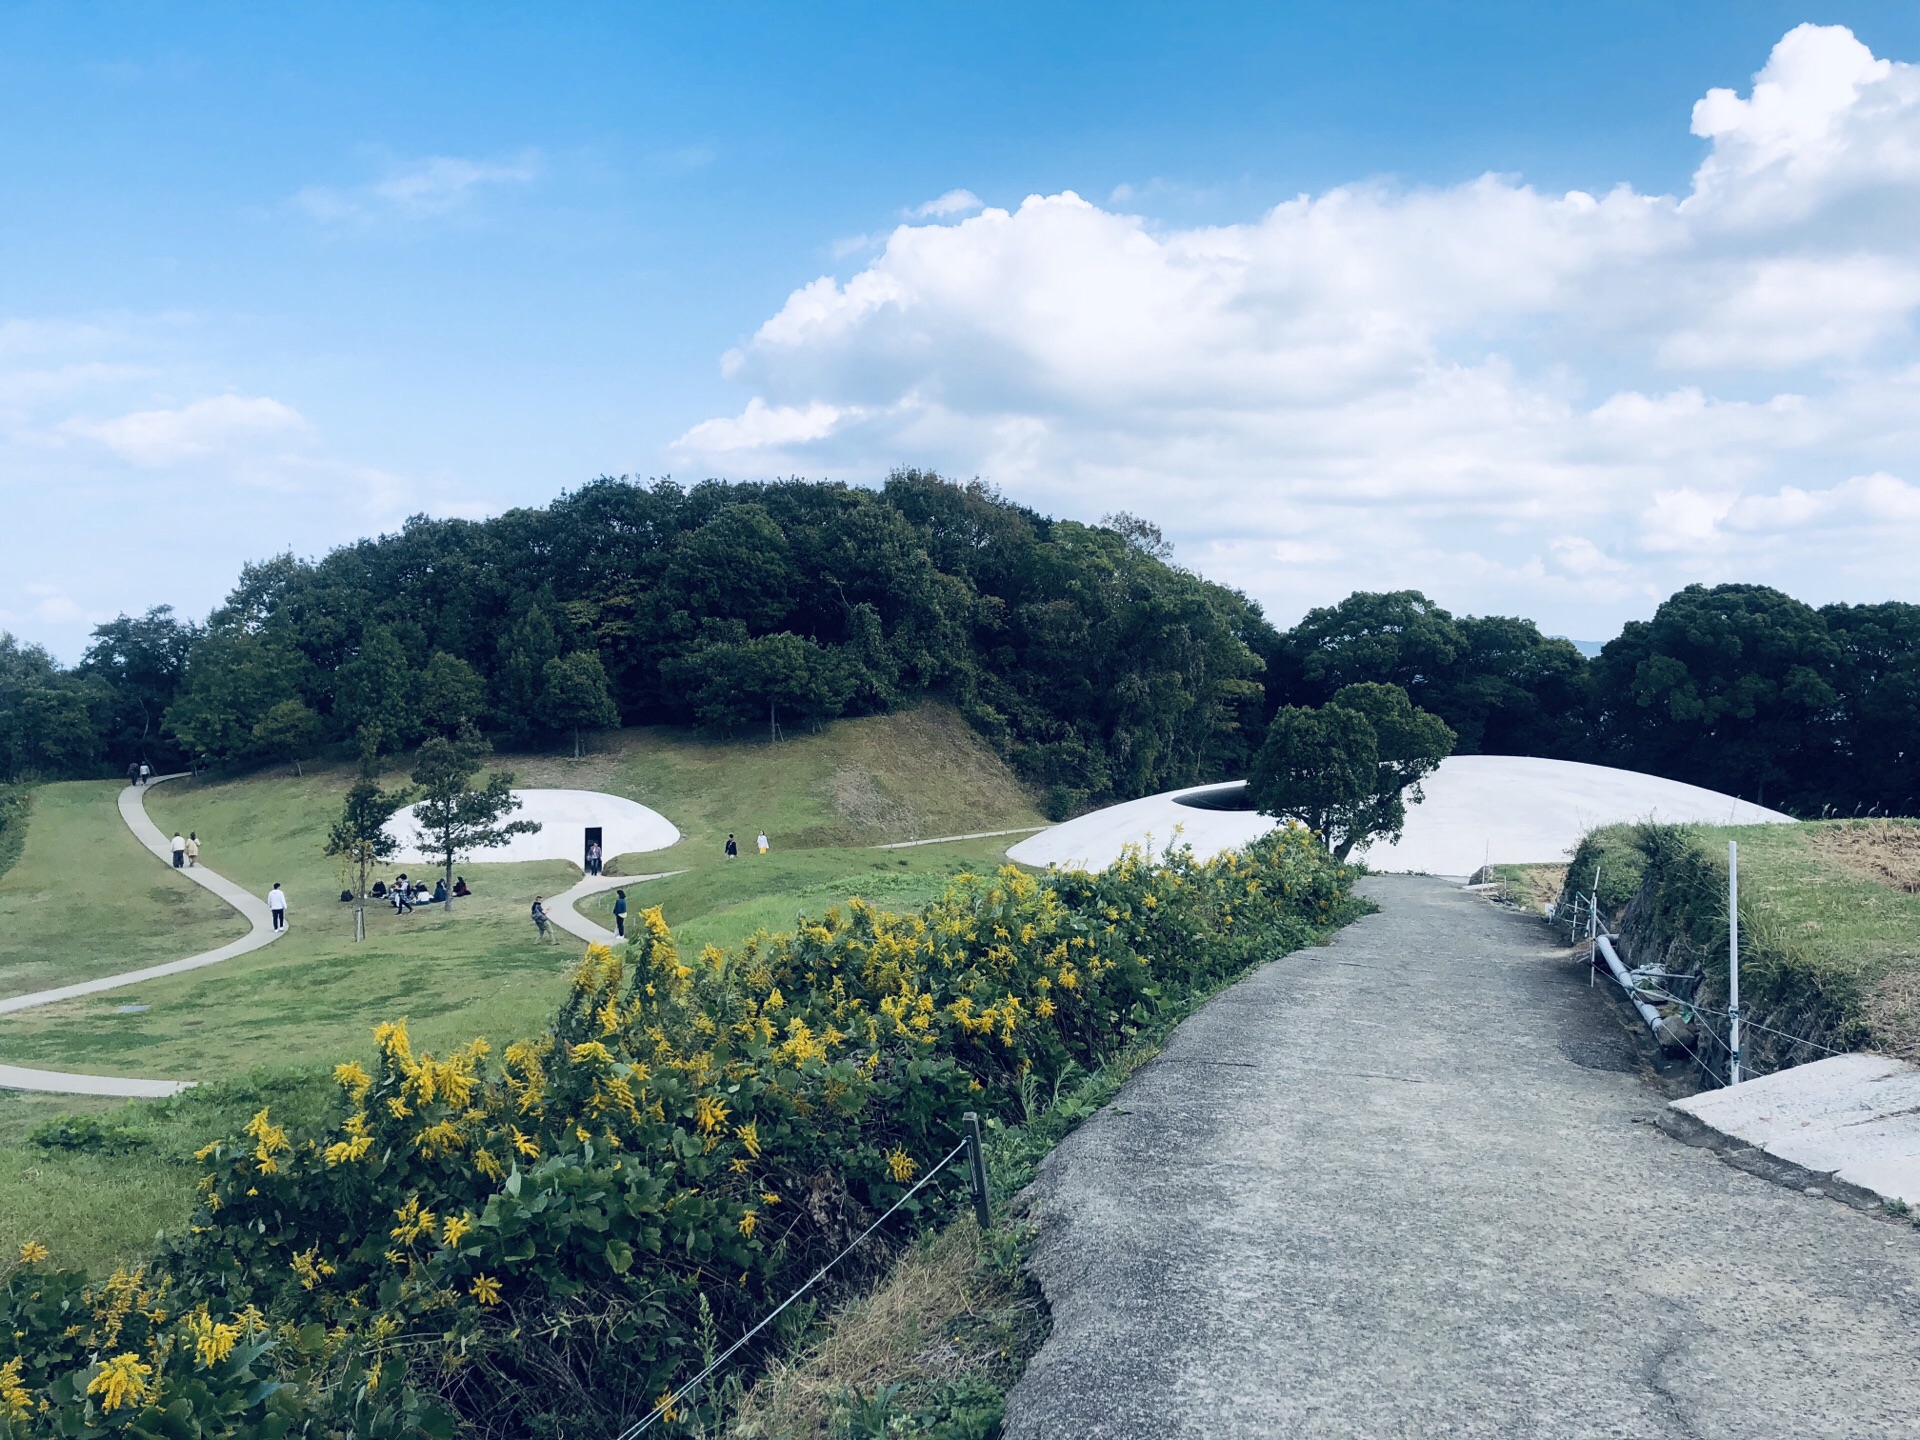 日本濑户内海的丰岛美术馆像一个水珠状的艺术品躺在岛山